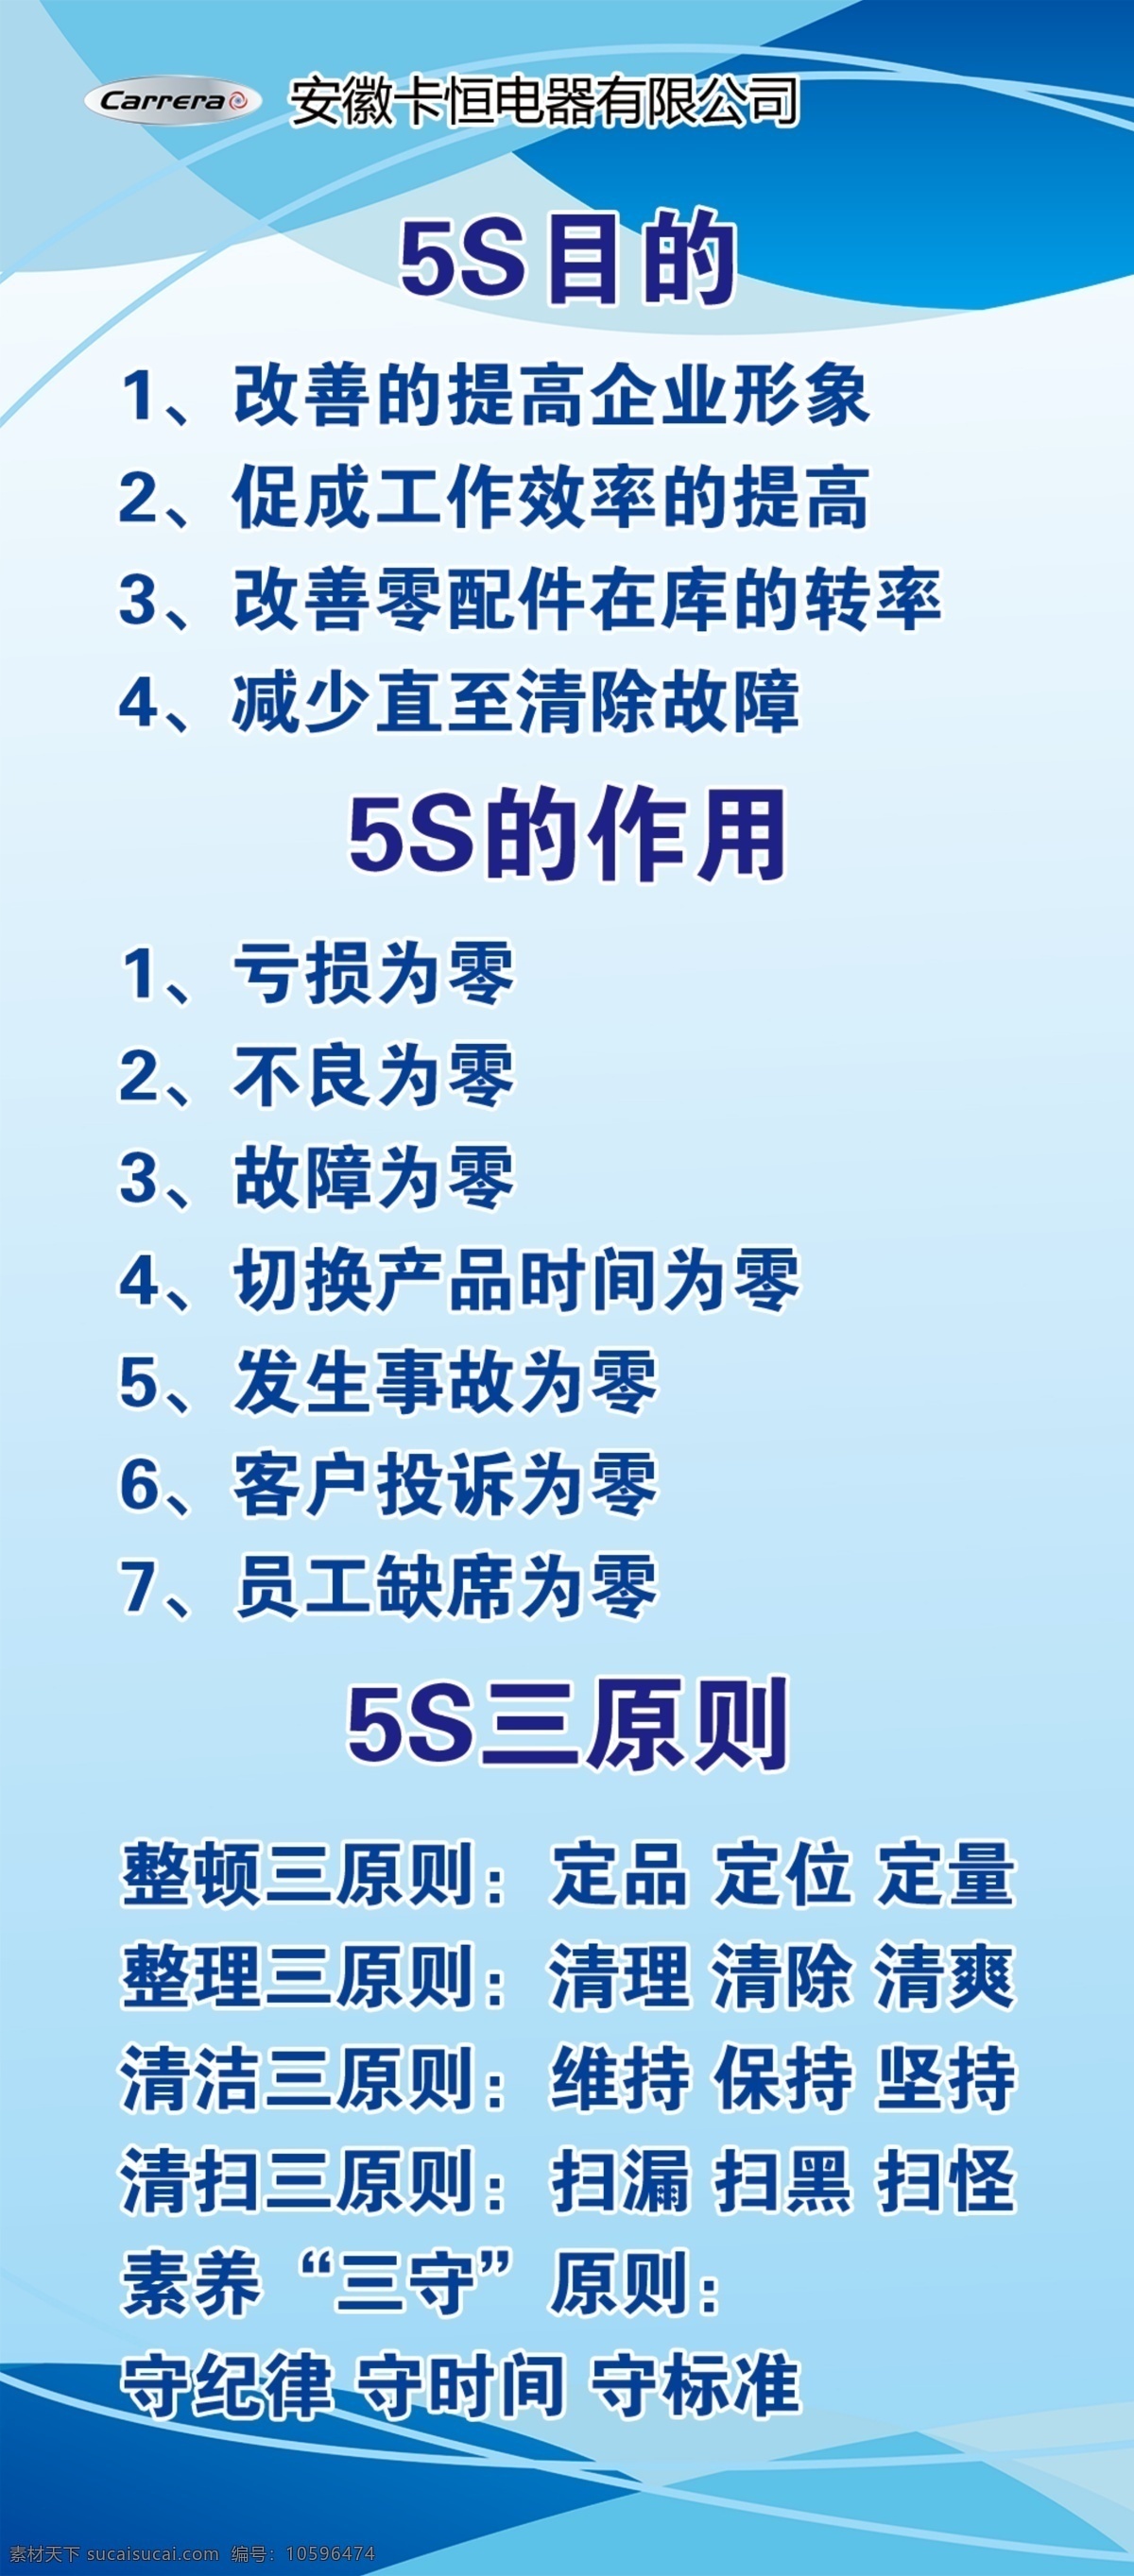 5s展板 5s目的 5s作用 5s三原则 渐变 蓝色